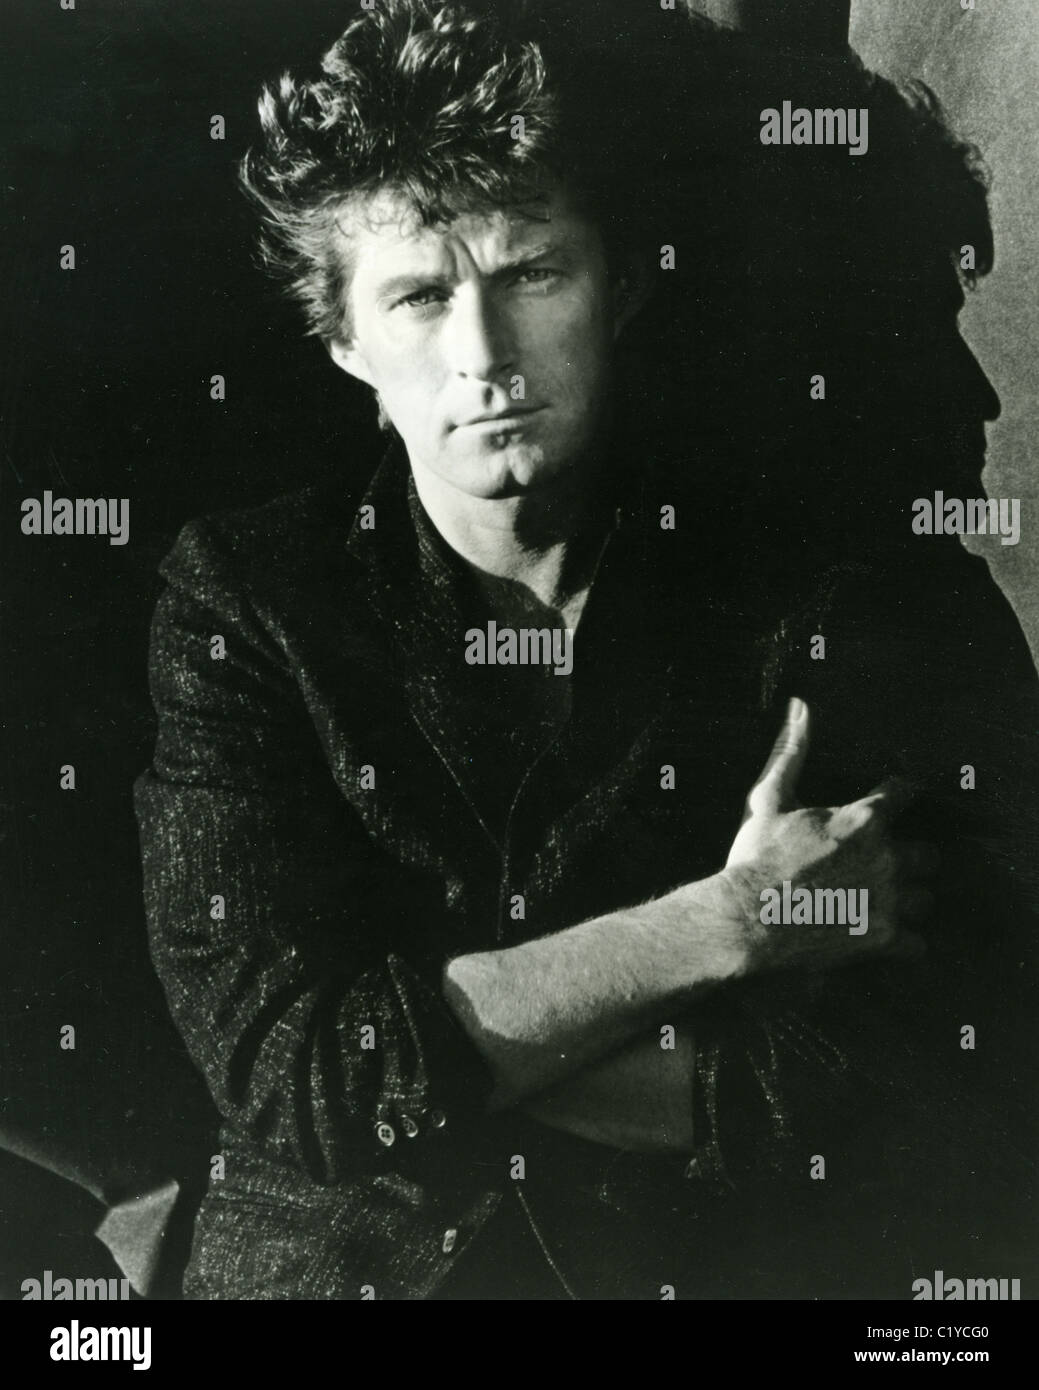 DON HENLEY photo promotionnelle de musicien rock américain en 1985 Banque D'Images